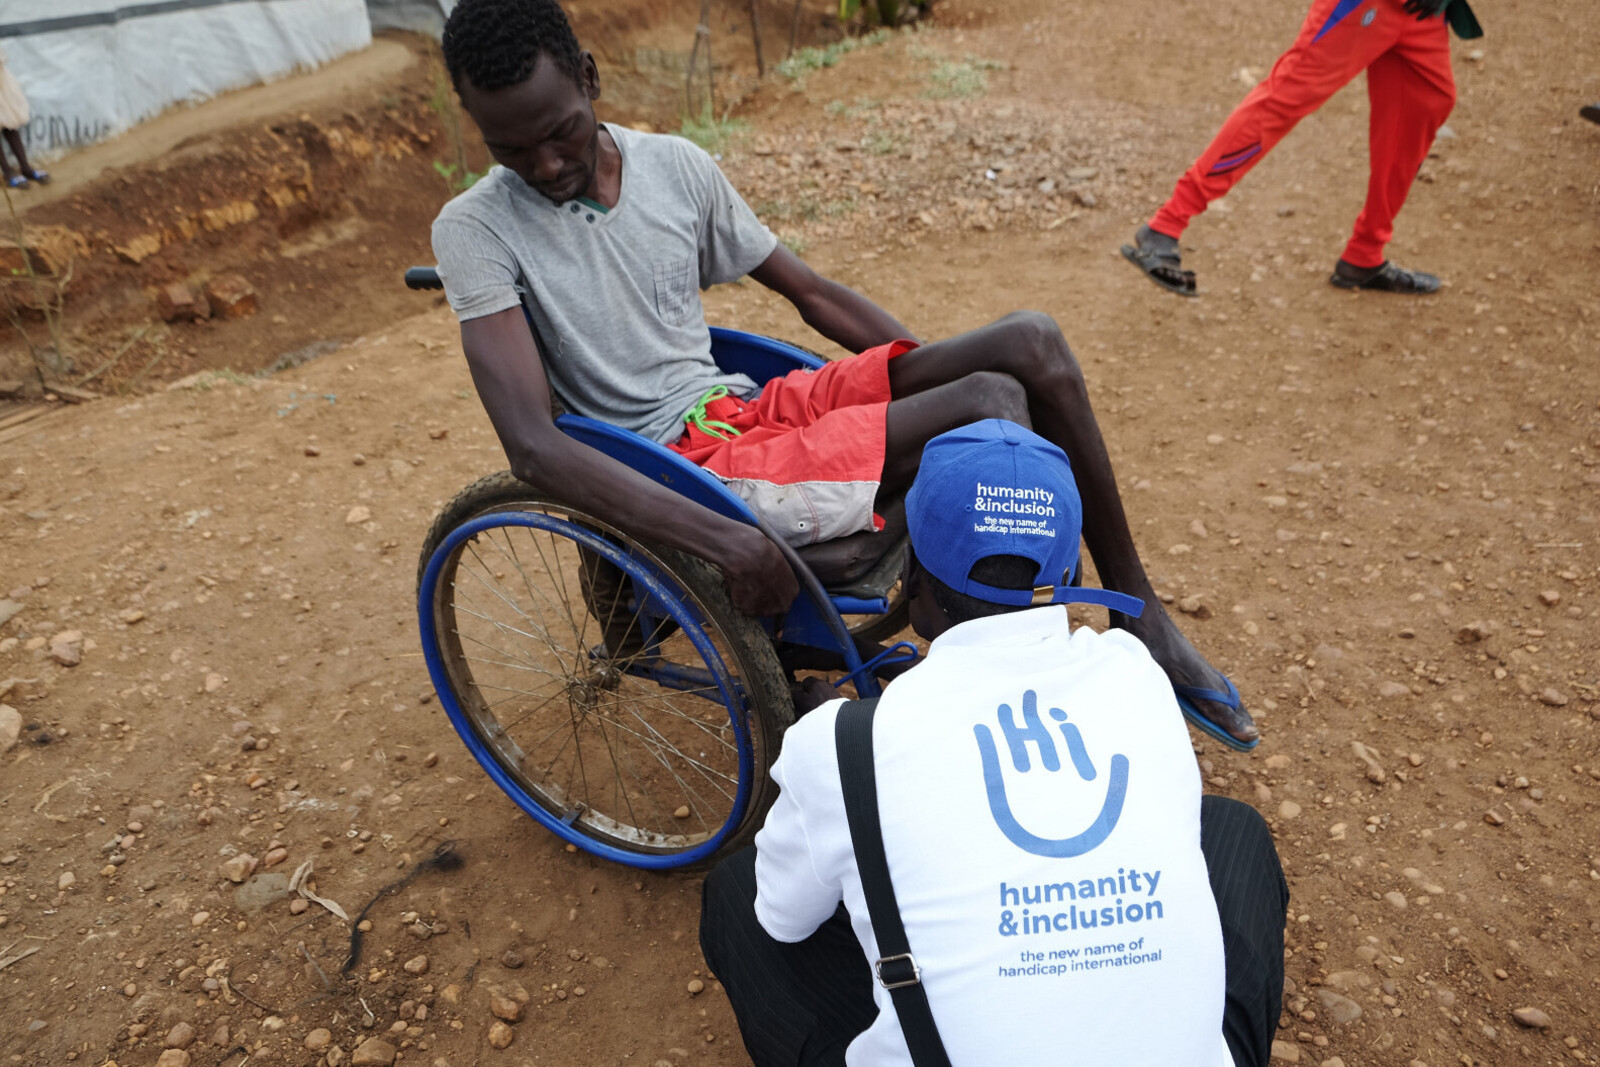 Süsudan: Khamis hat von HI einen Rollstuhl bekommen